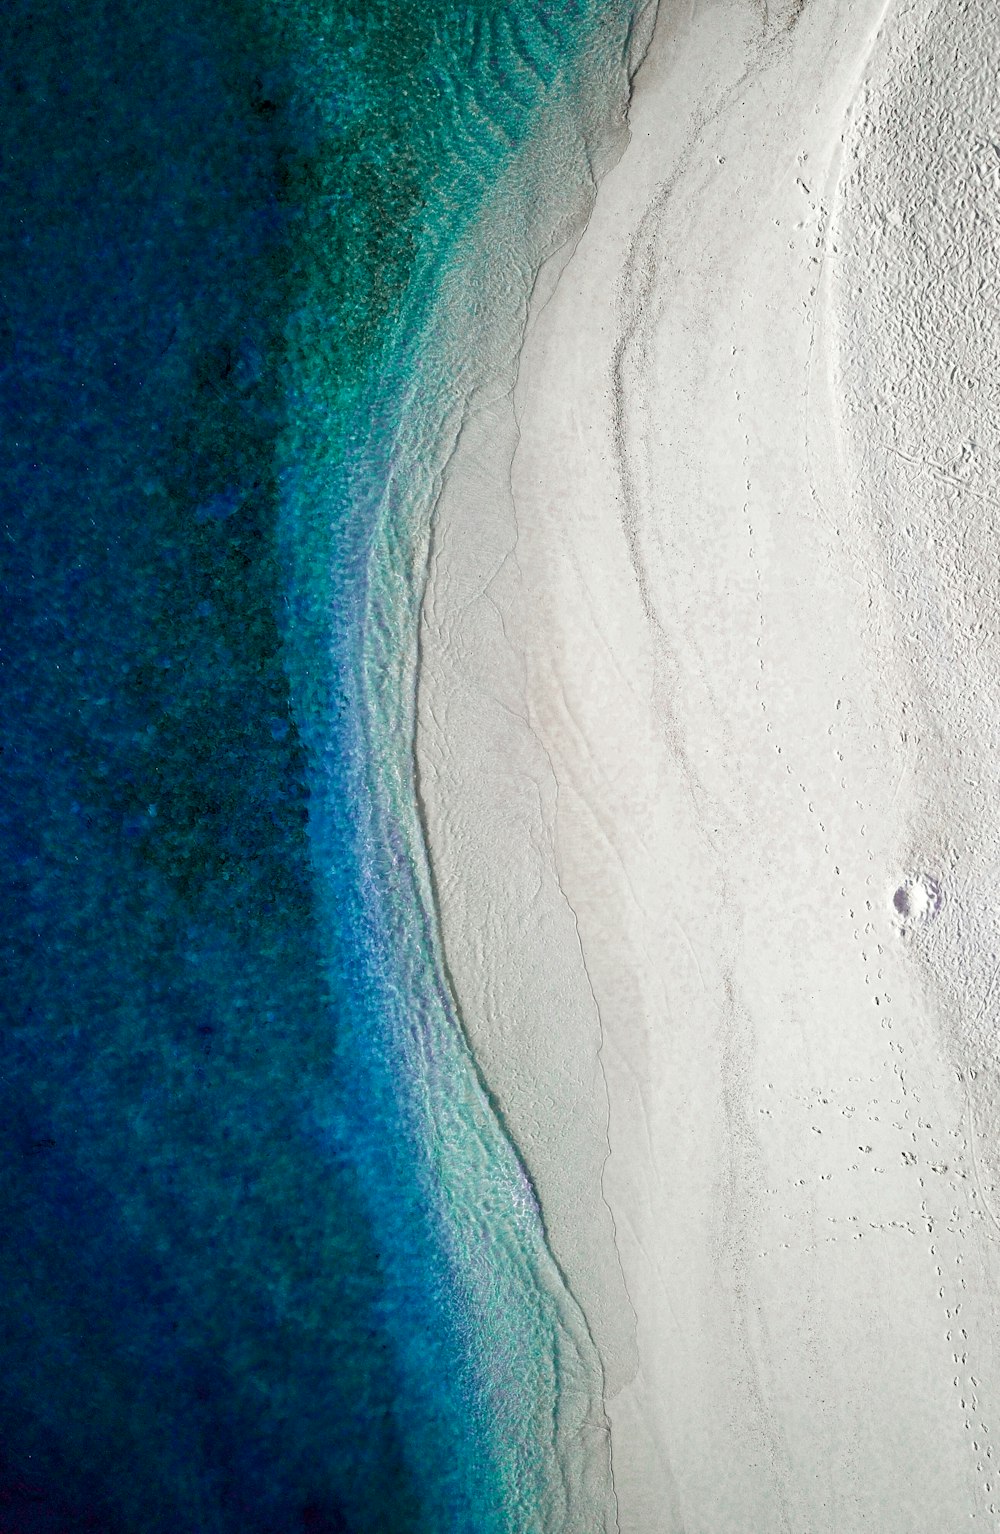 a bird's eye view of a white sand beach